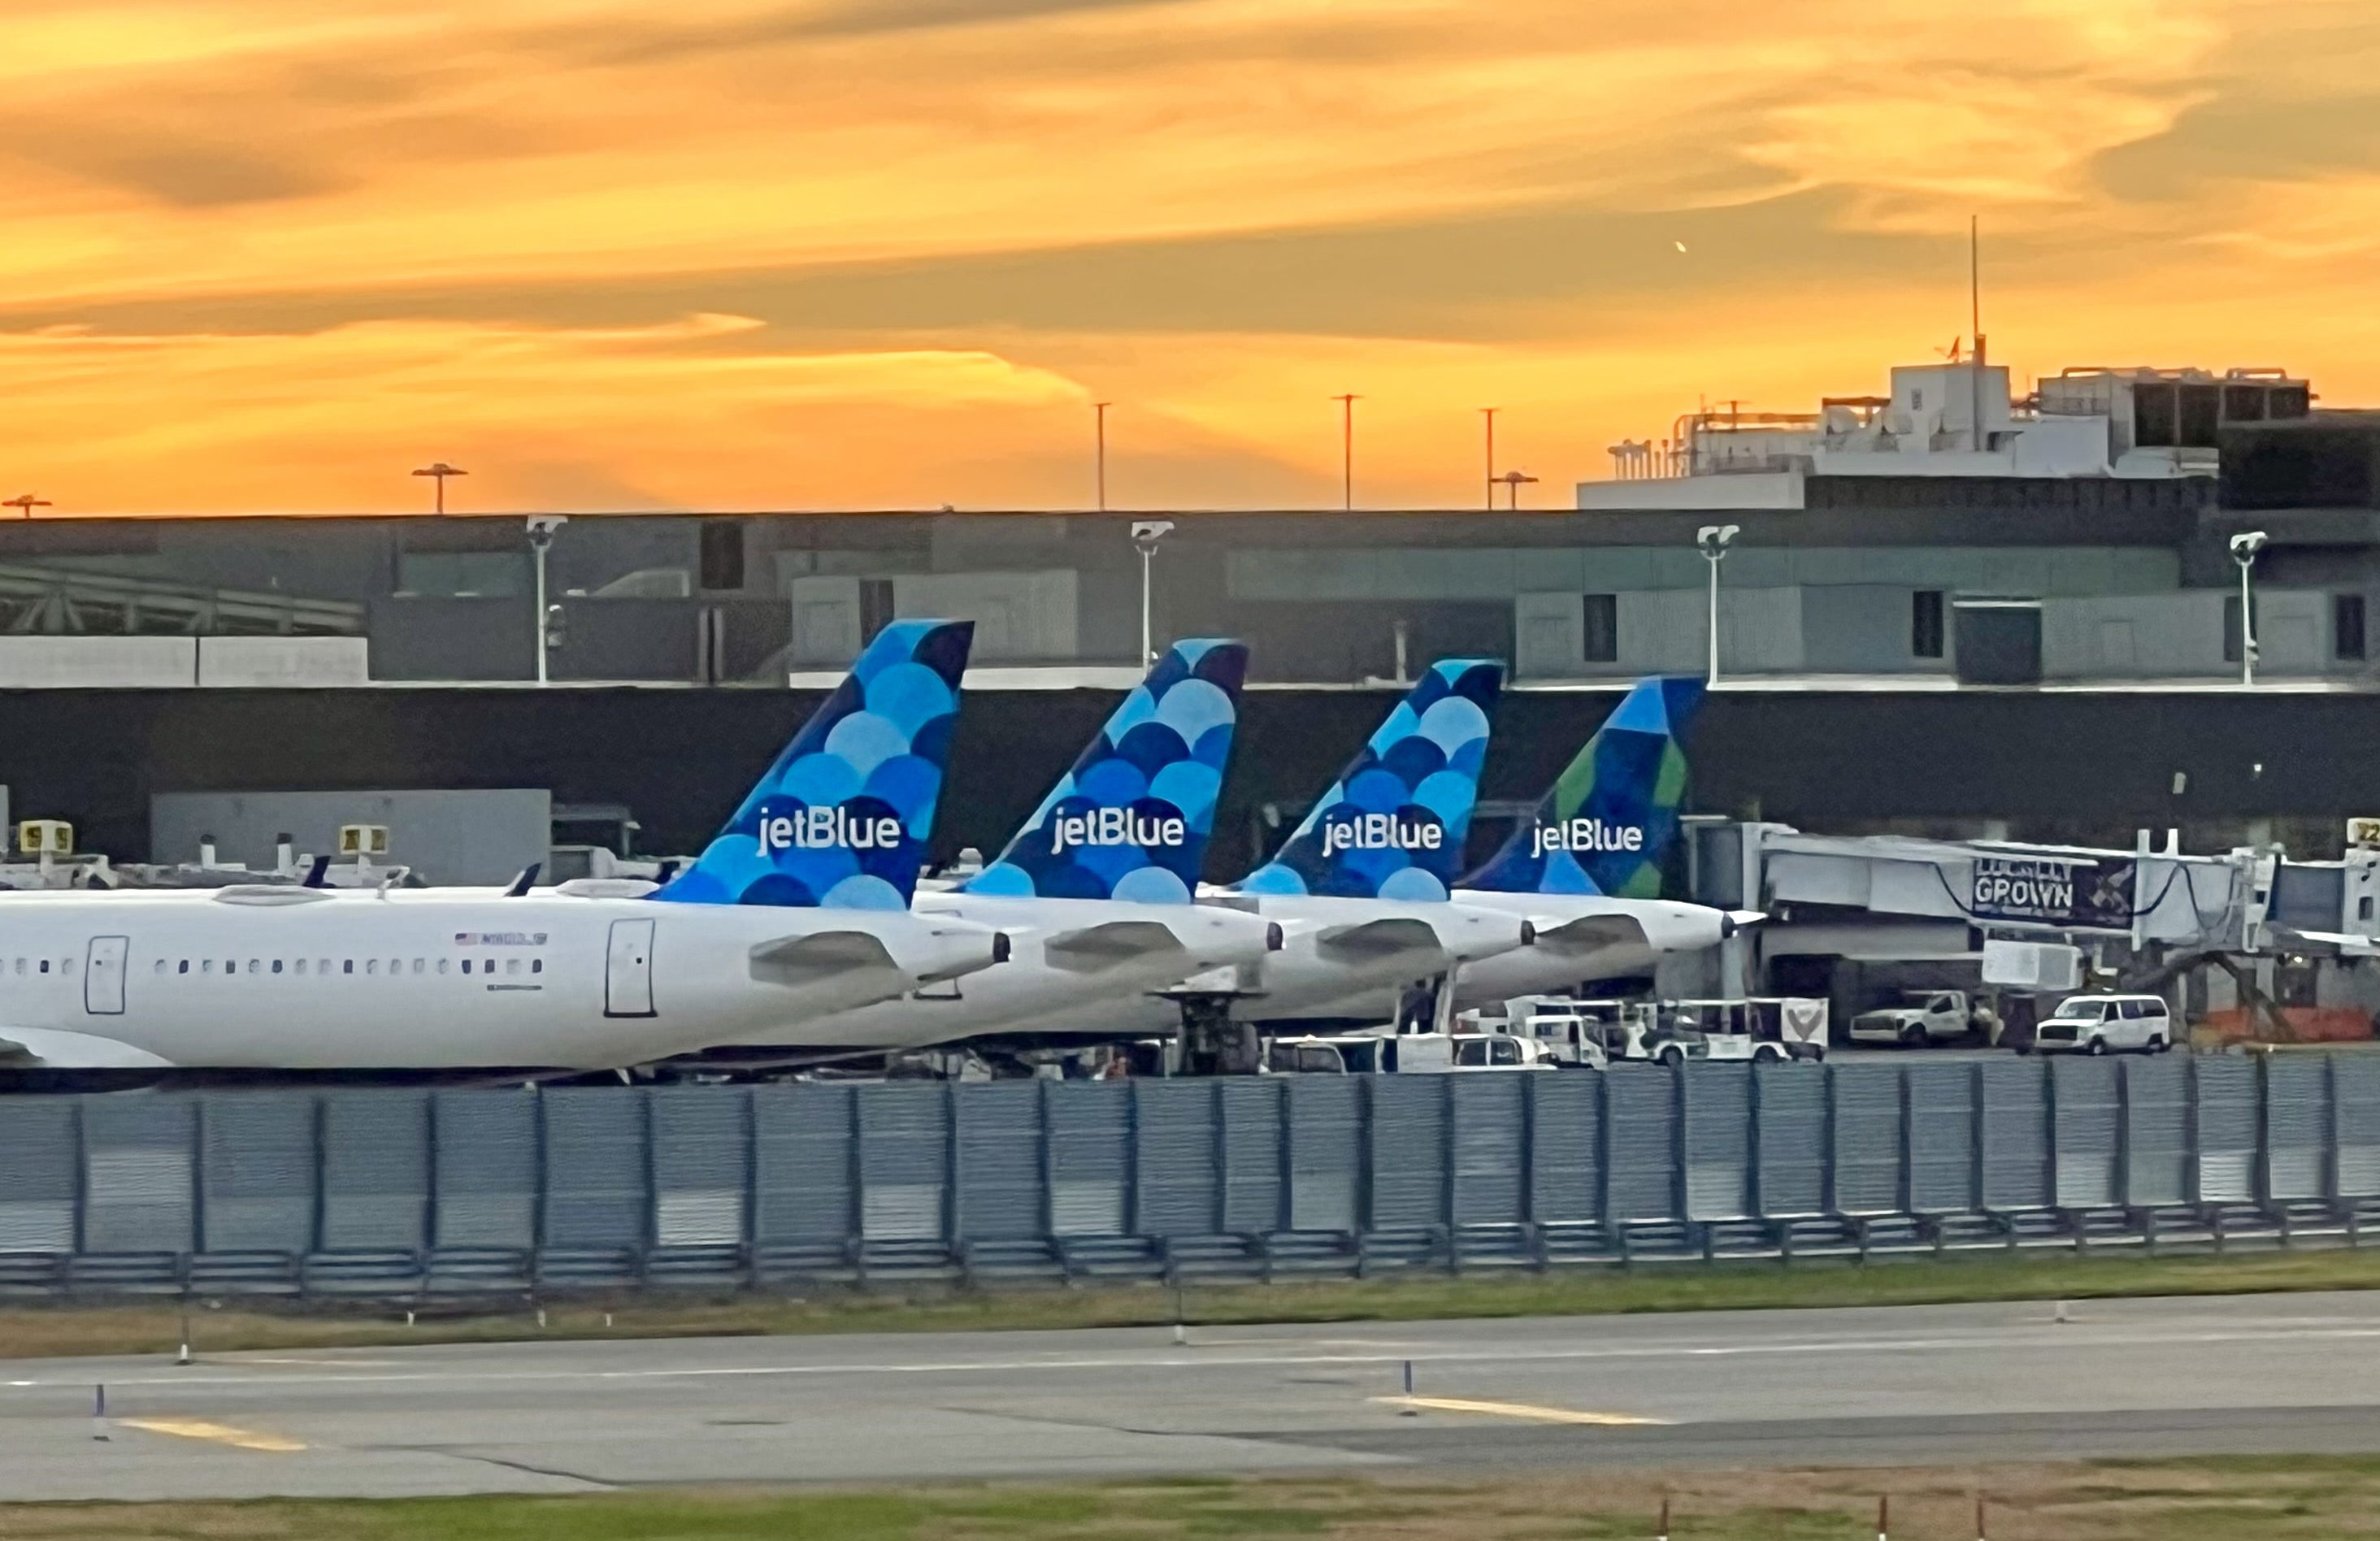 JetBlue tail fins at JFK